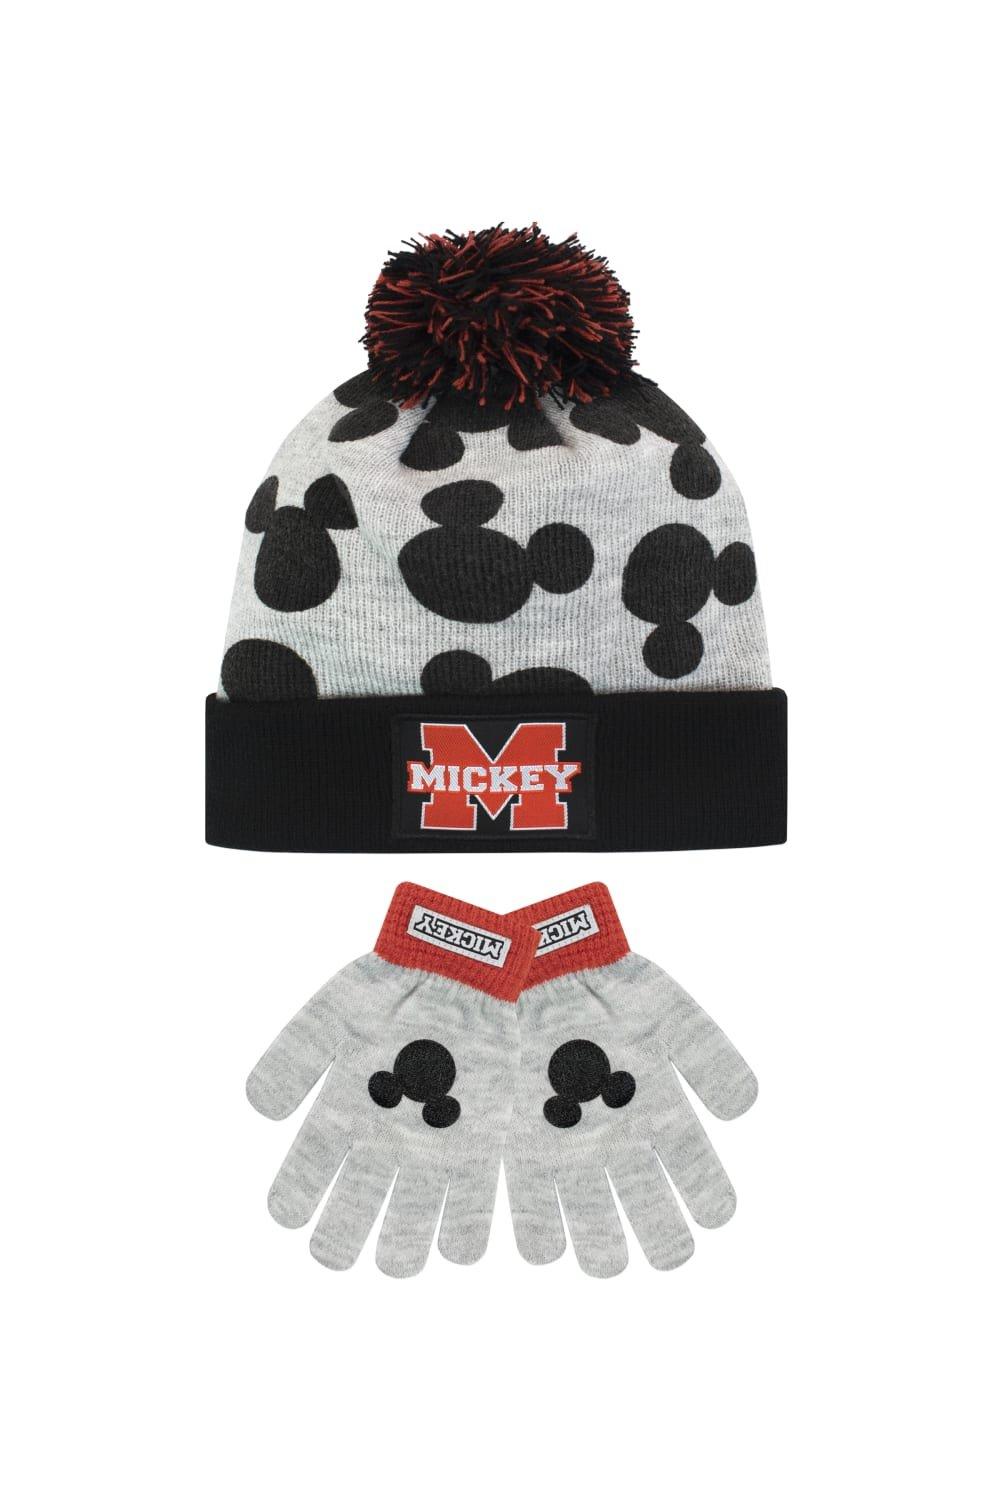 шапка modniki для мальчиков и девочек с помпоном р56 темно серо черная Детский комплект шапки и перчаток с Микки Маусом Disney, серый